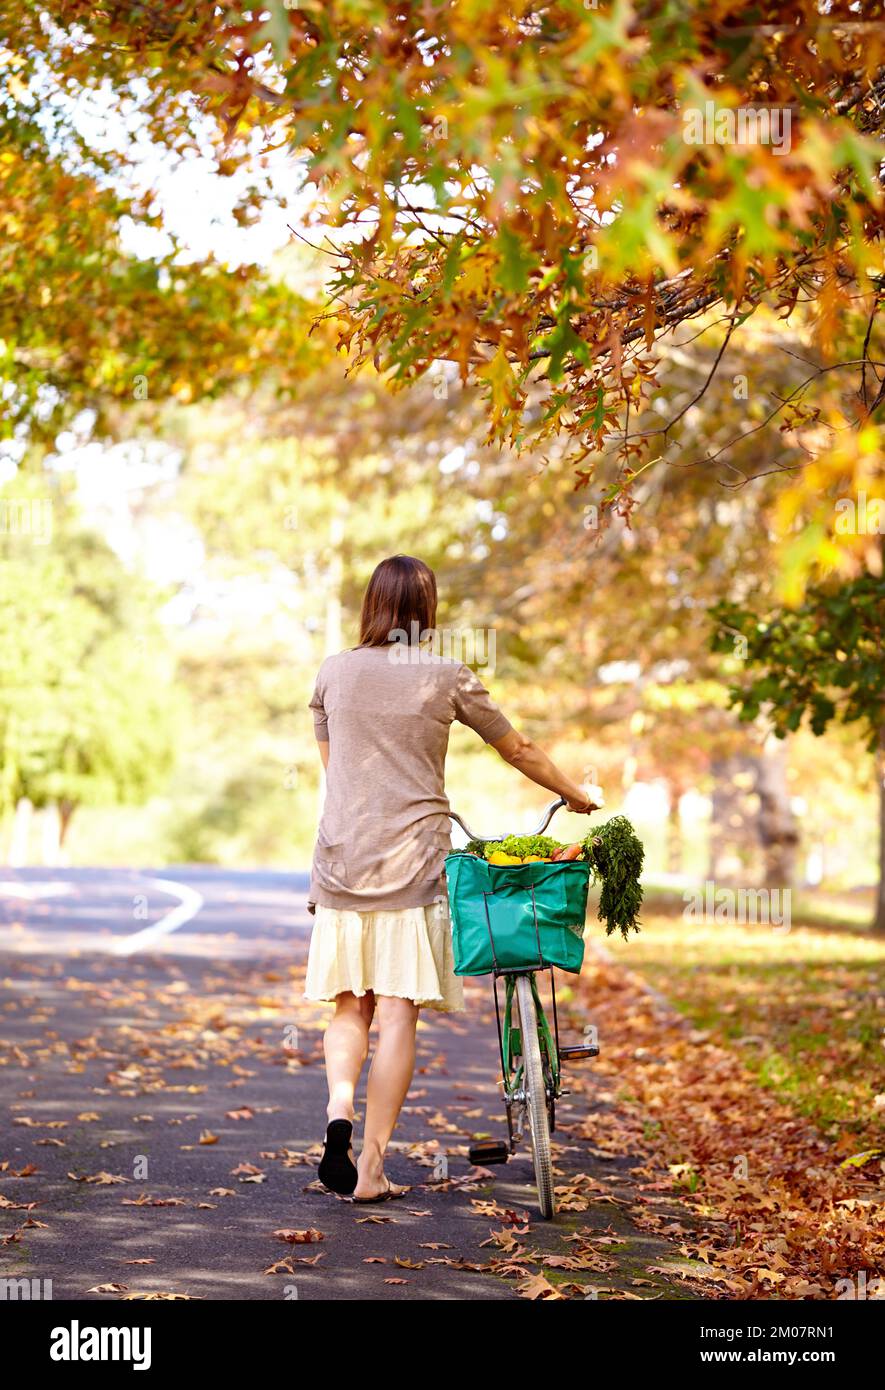 Ha scelto il giorno perfetto per portare la sua moto al negozio. Ripresa da dietro di una giovane donna che cammina a casa dal negozio di alimentari con la sua bicicletta. Foto Stock